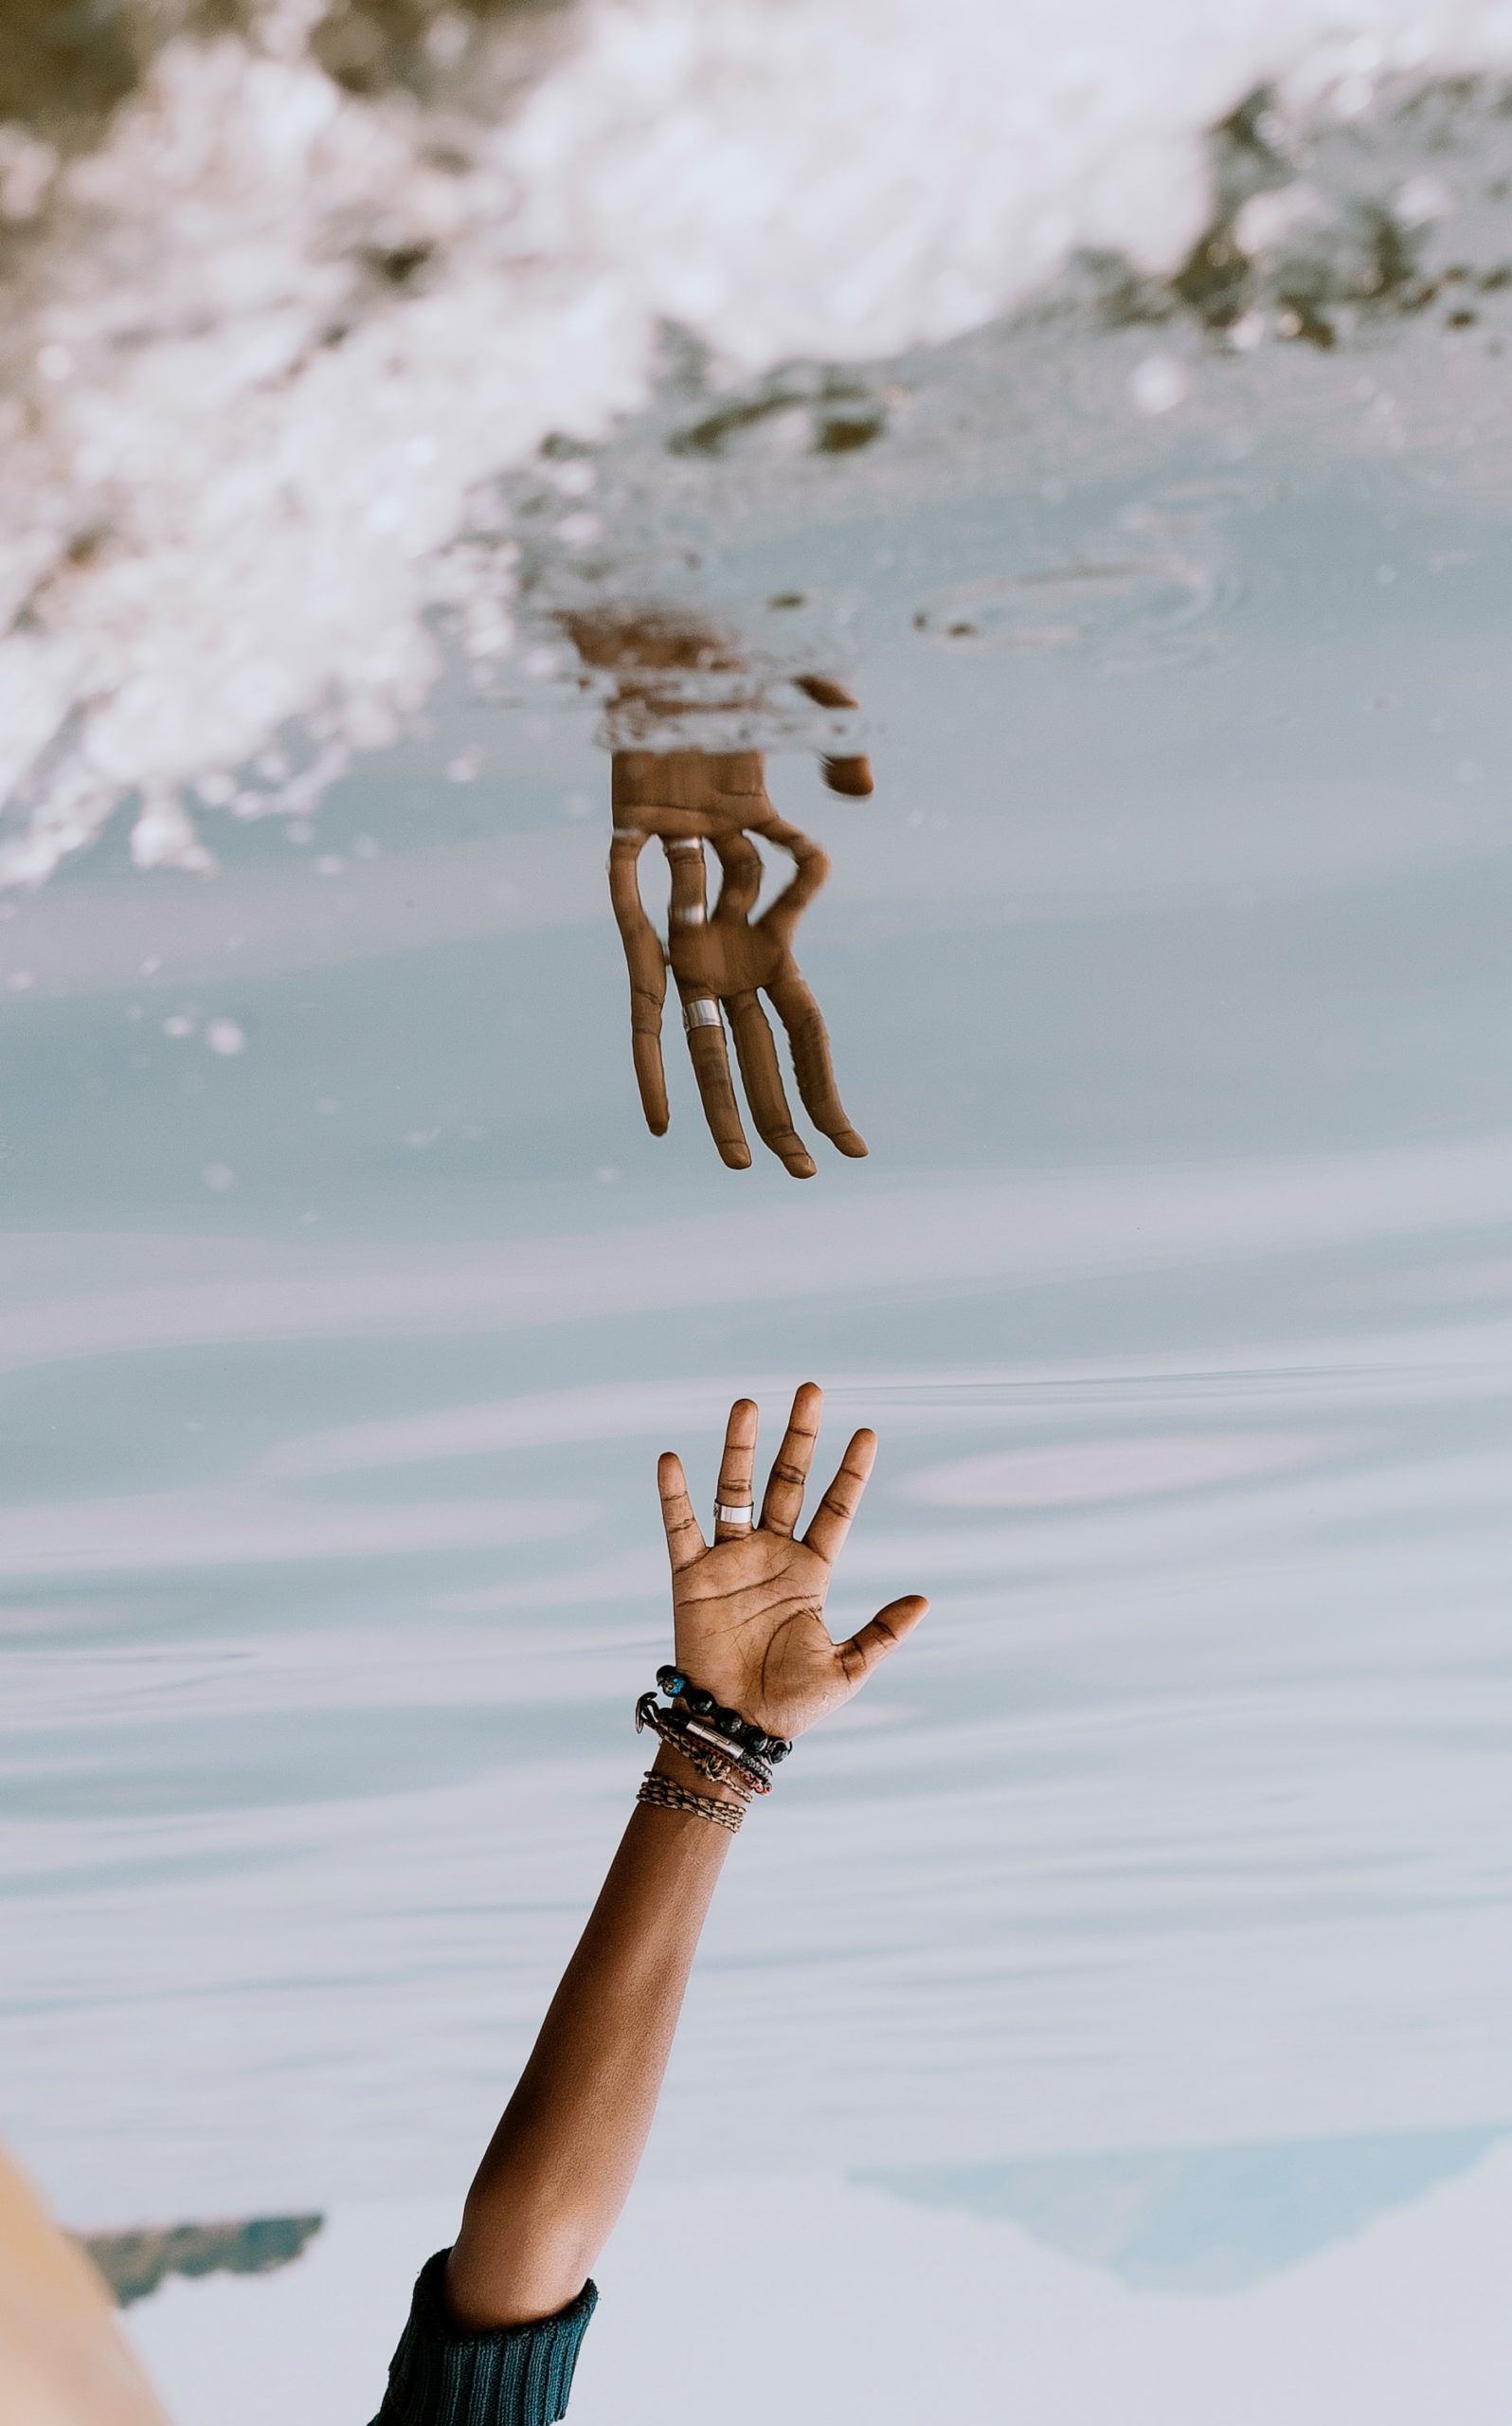 Imagem que retrata uma mão estendida na direção de seu reflexo na água.